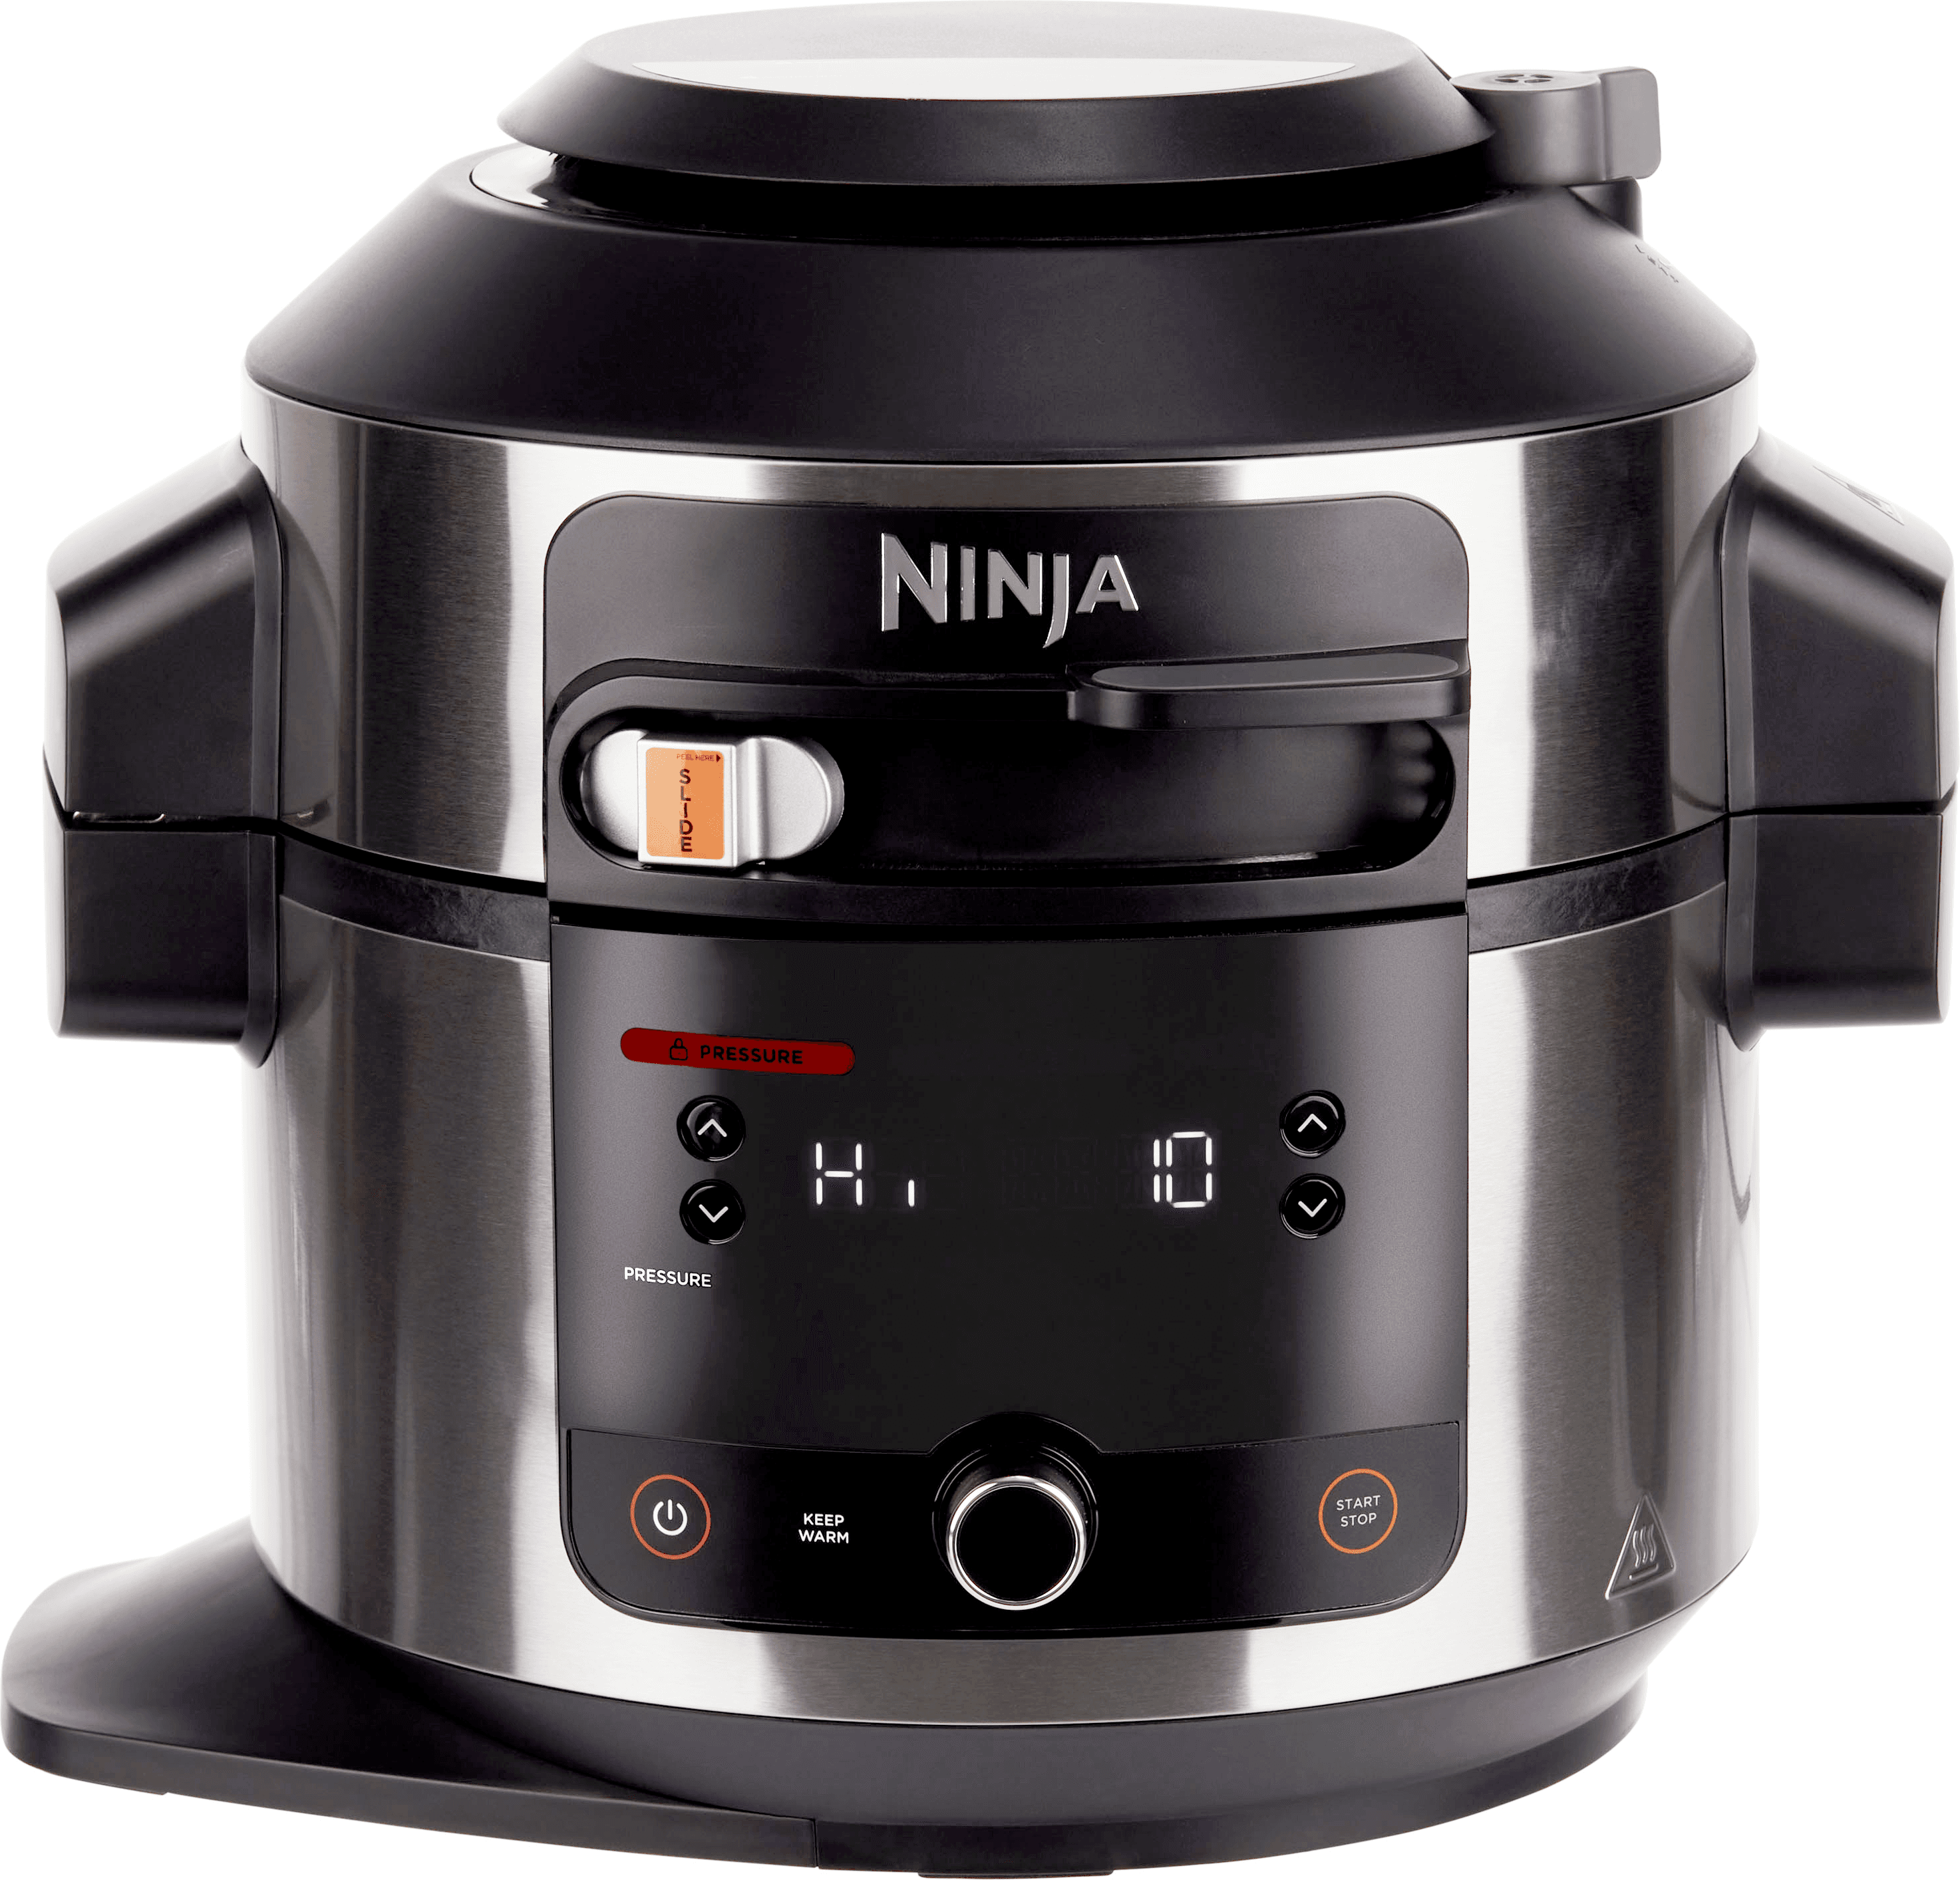 Ninja Foodi 11-in-1 SmartLid OL550UK 6 Litre Multi Cooker With Air Fryer Function - Stainless Steel / Black, Stainless Steel